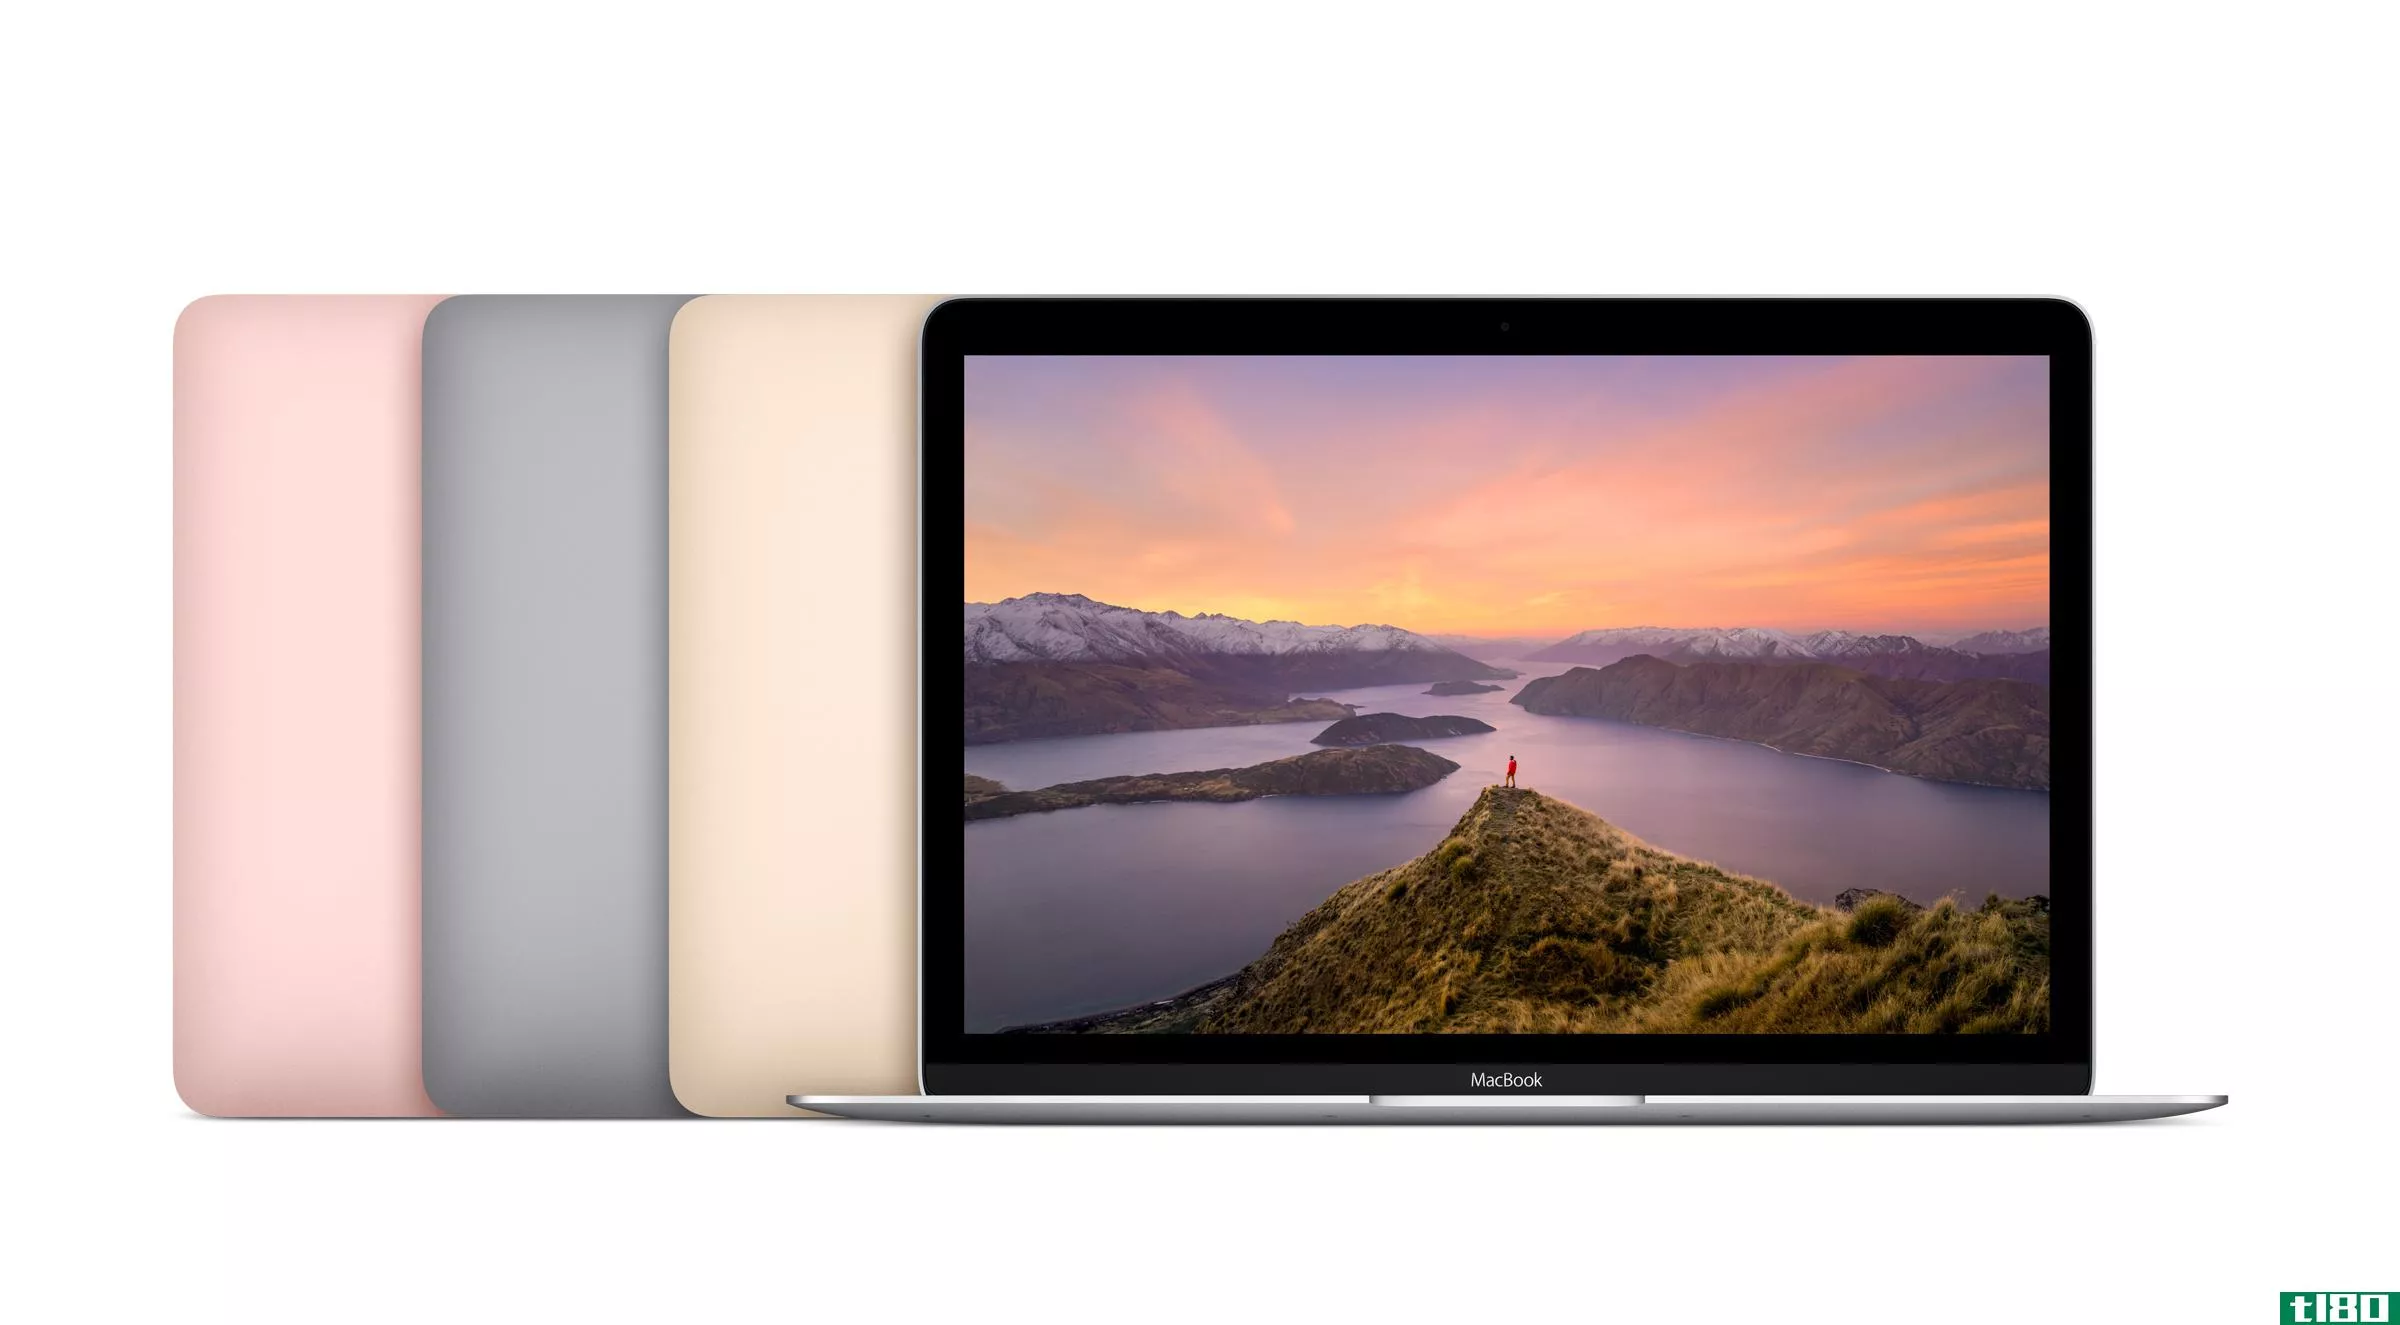 苹果的macbook拥有更快的处理器、更长的电池寿命和玫瑰金的颜色